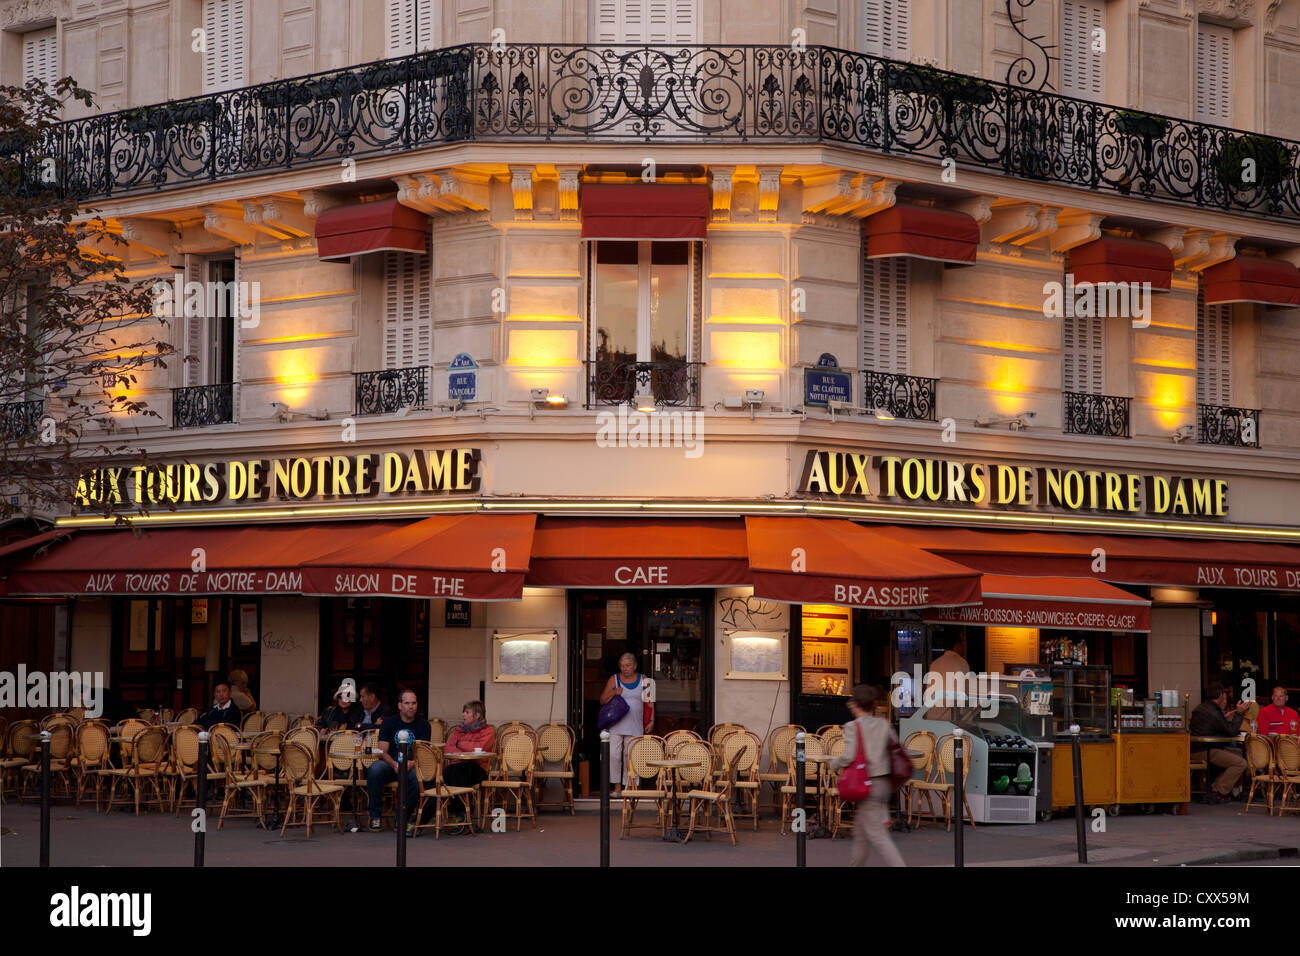 Cafe aux tours de Notre Dame in Paris Stock Photo: 50976736 - Alamy